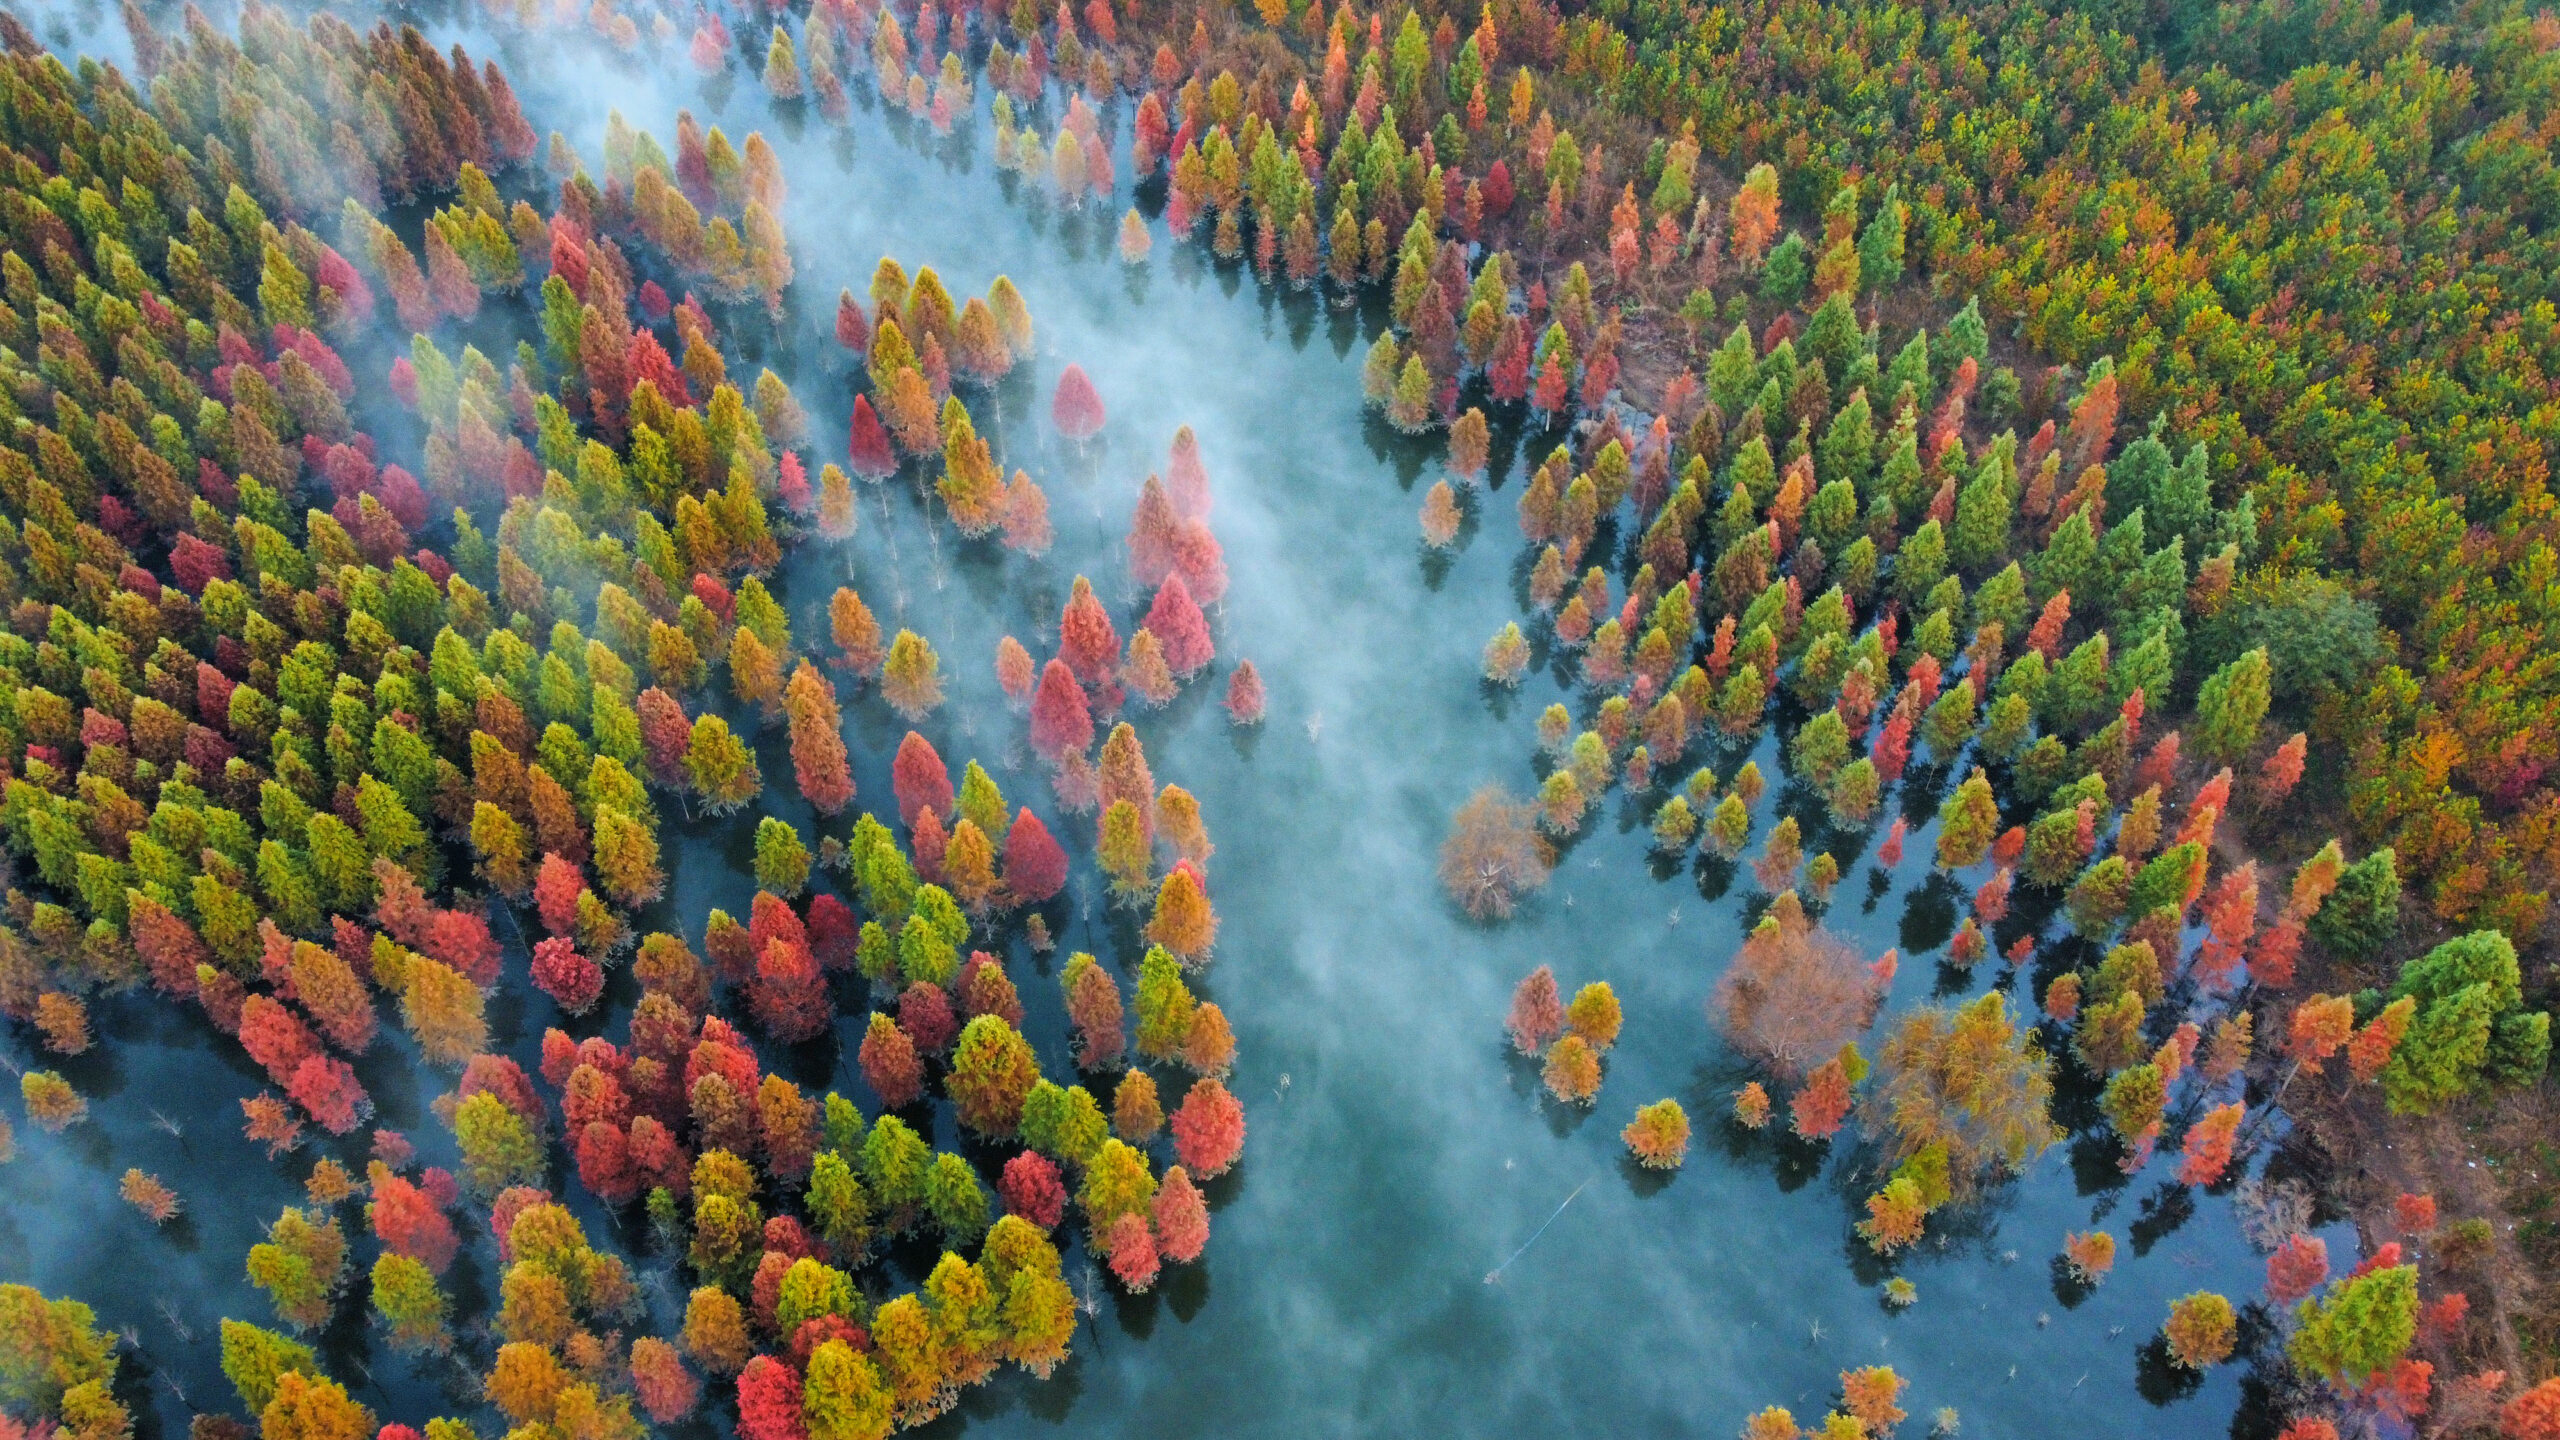 โบยบินเหนือ 'ป่าสนเรดวูด' กลางพื้นที่ชุ่มน้ำในยูนนาน